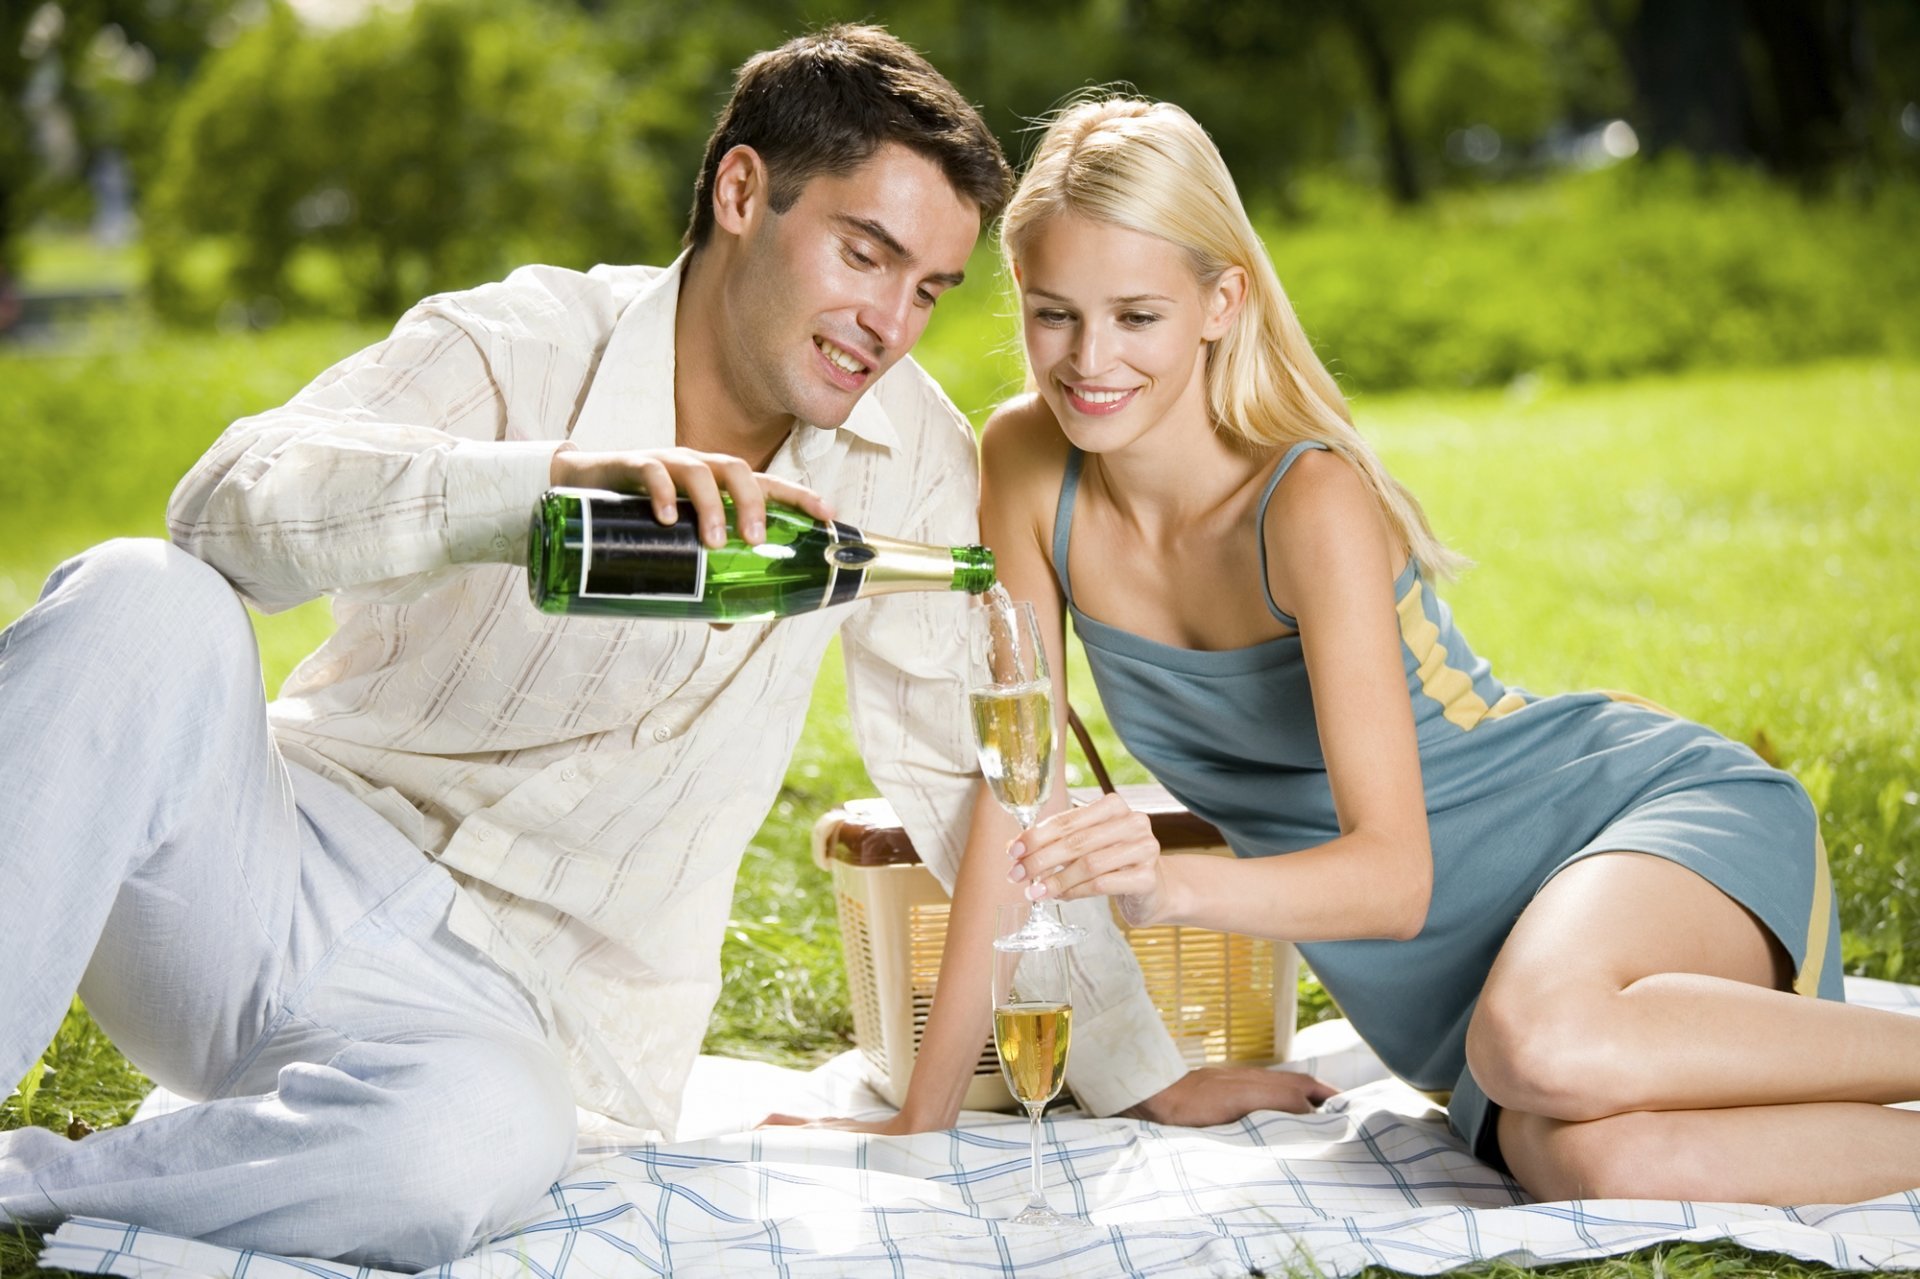 Romantisches Picknick im Grünen